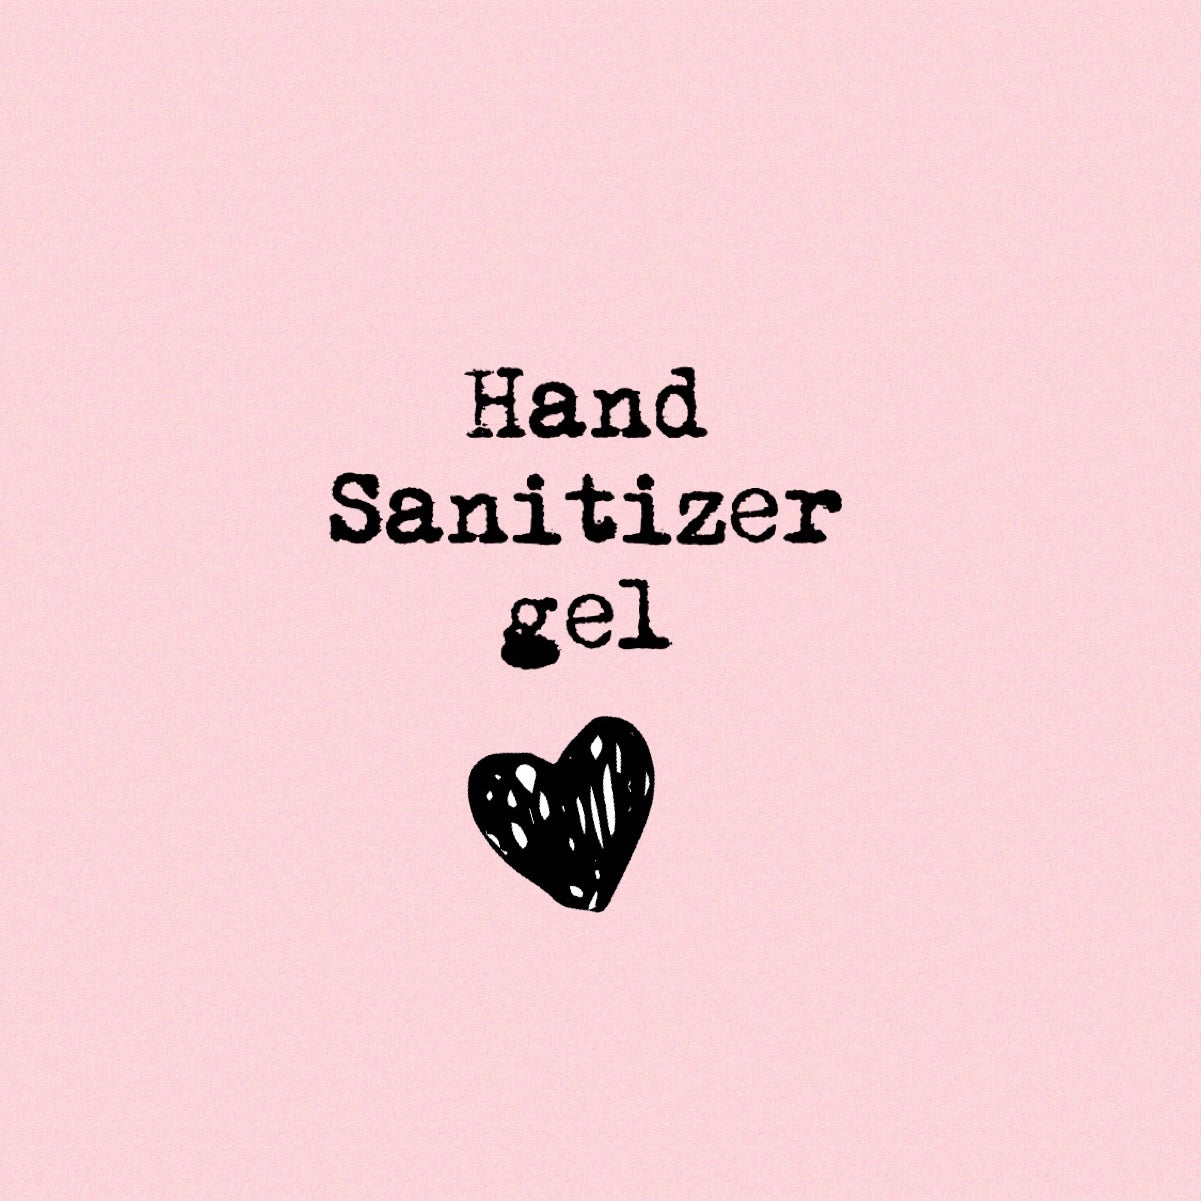 HAND SANITIZER GEL